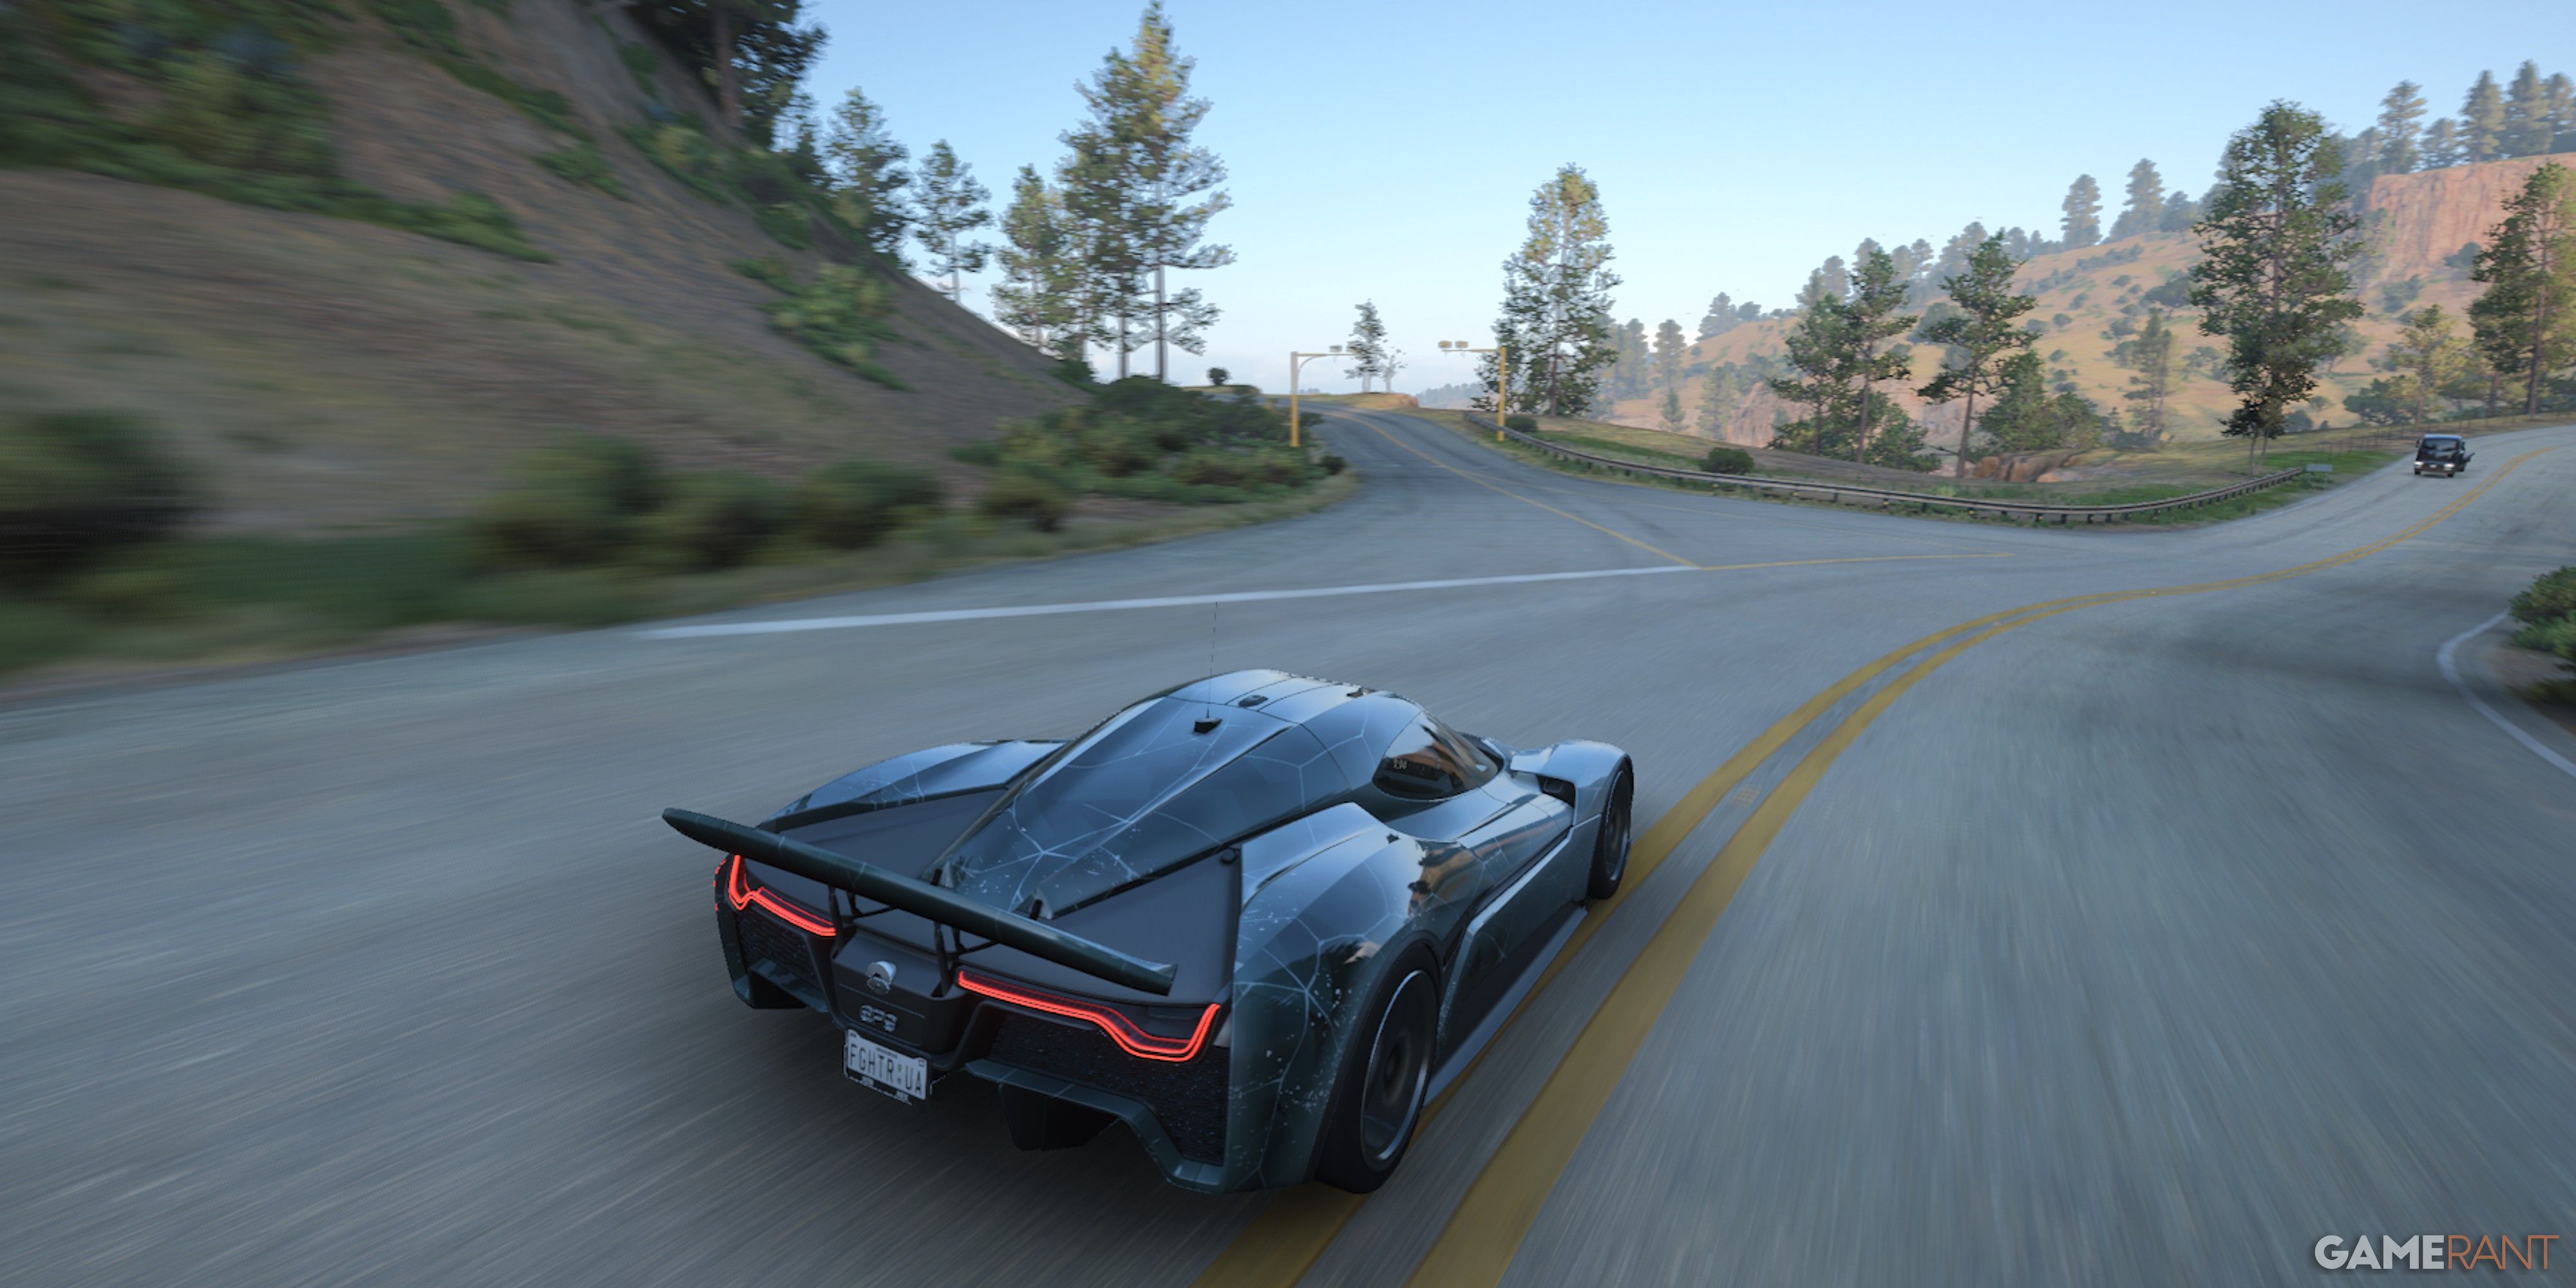 Forza Horizon 5 NIO EP9 On Mexico Roads